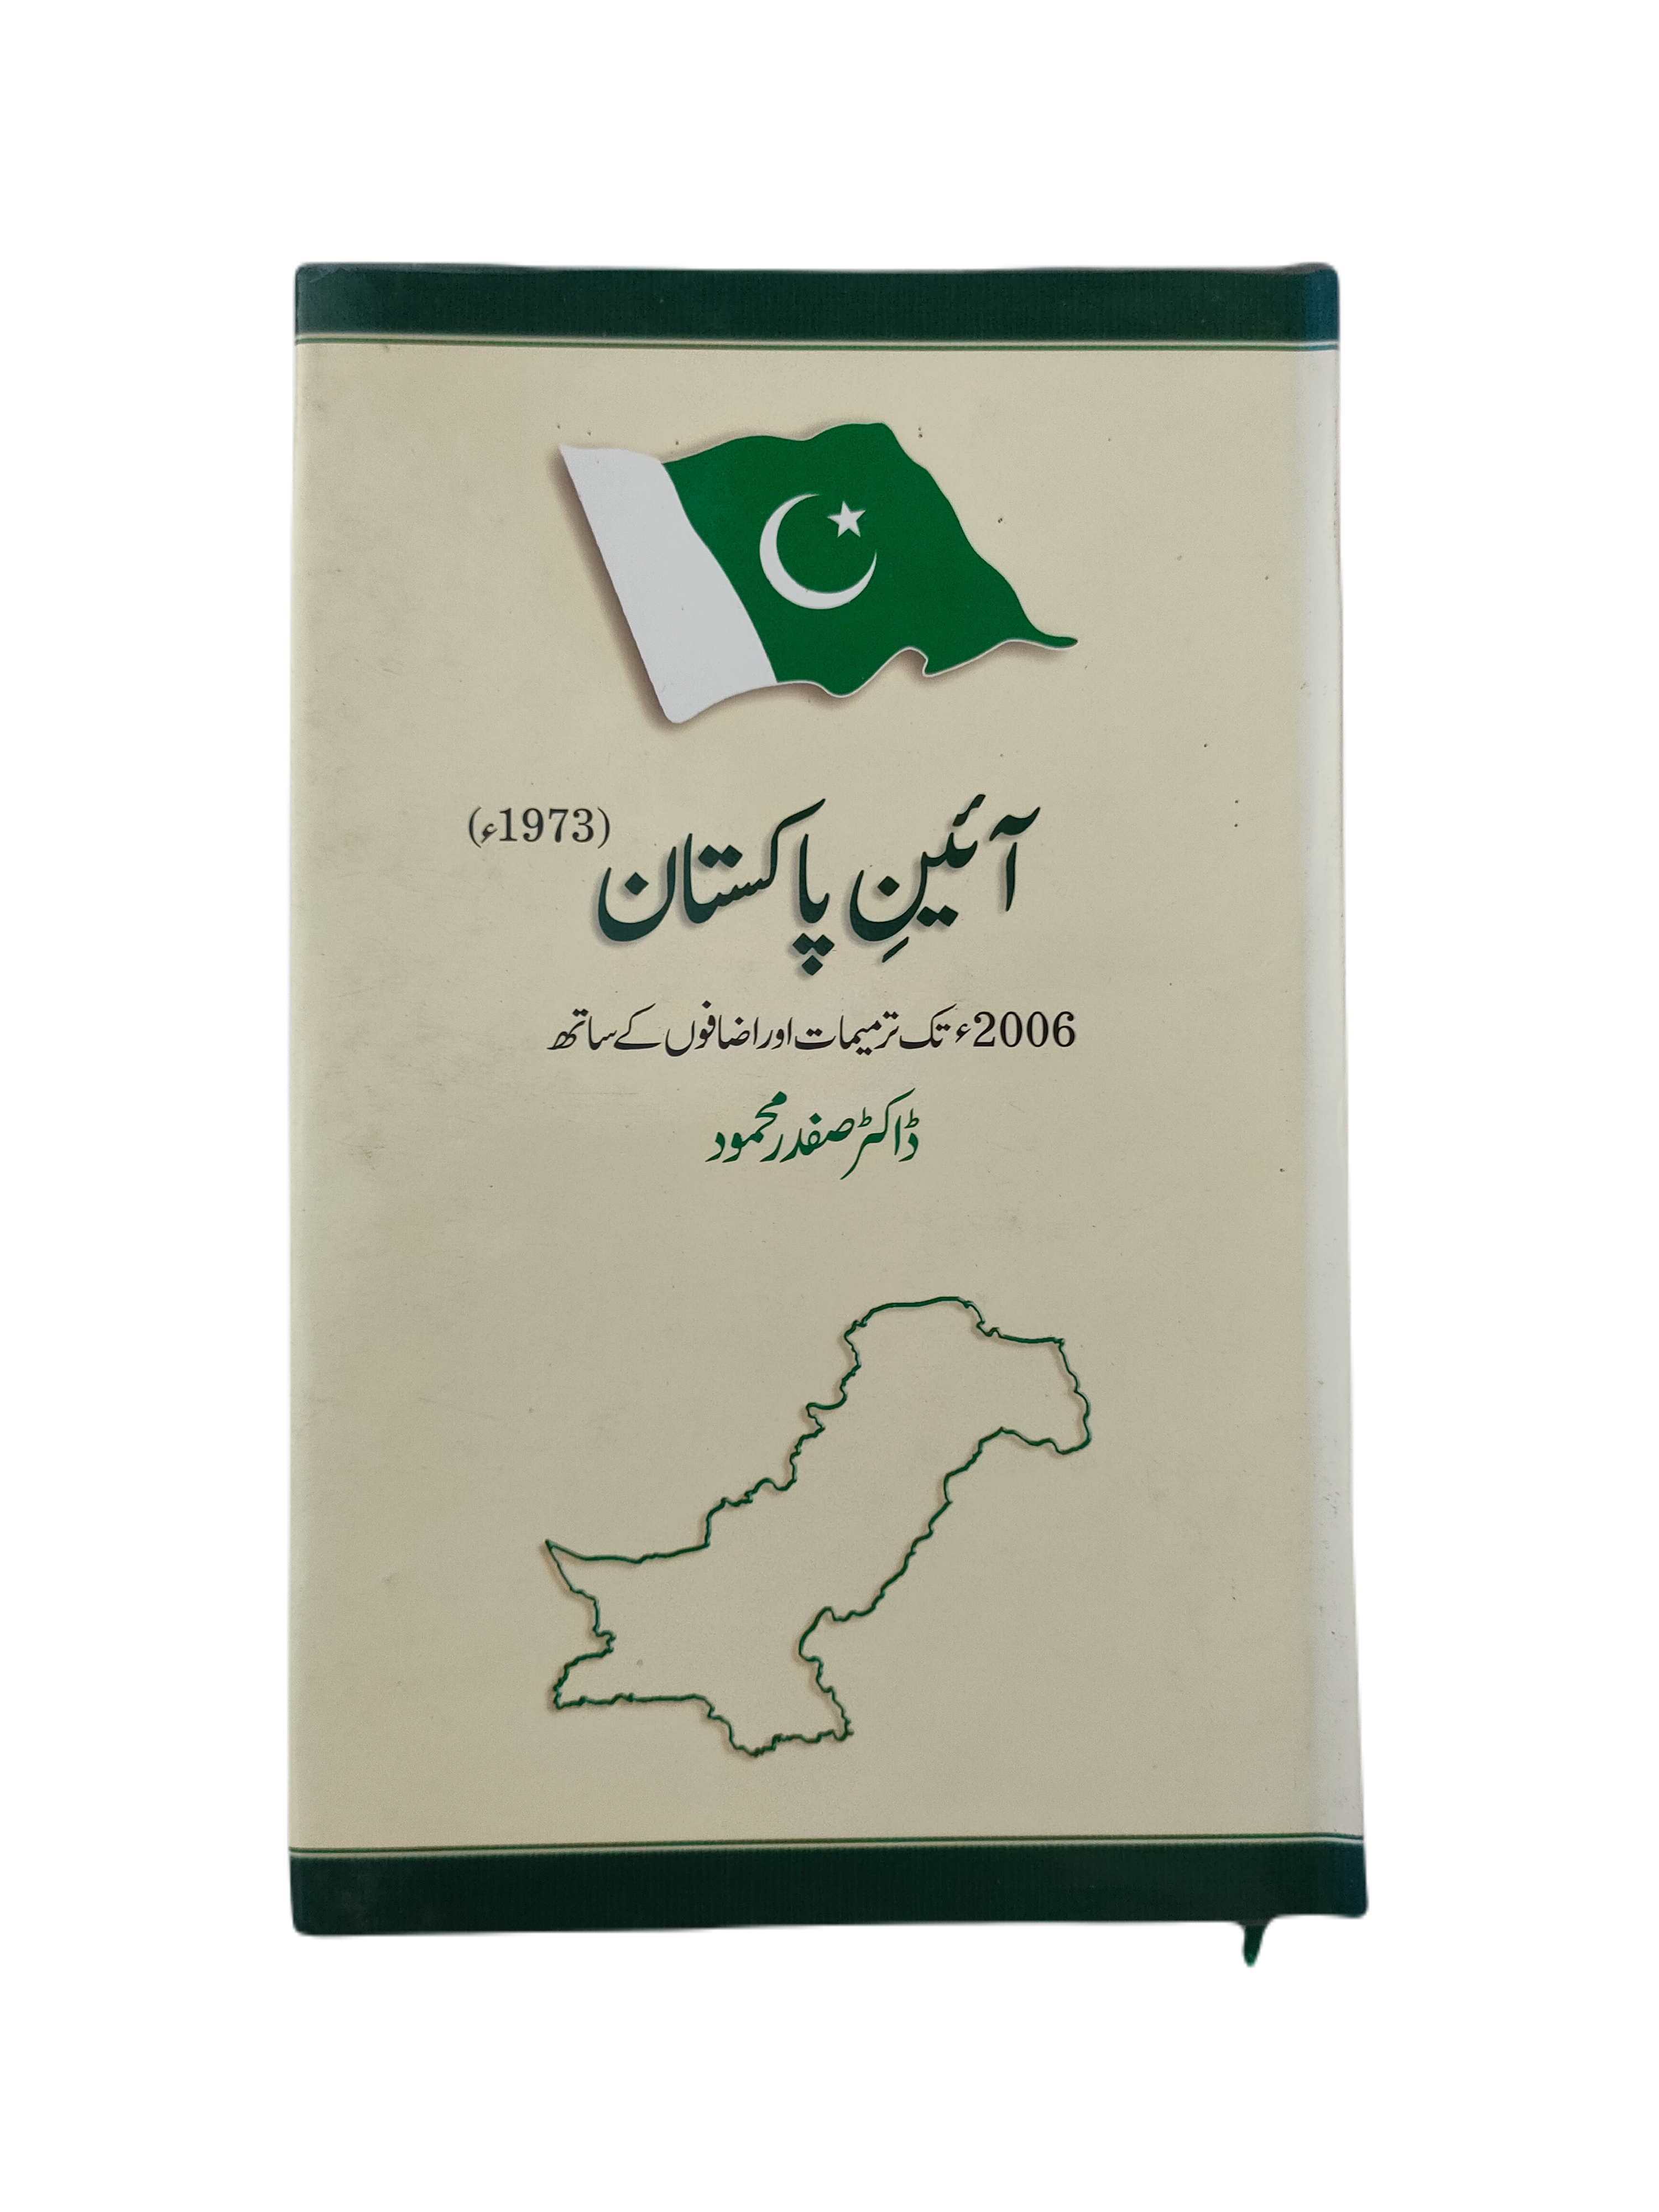 Ayin-e-Pakistan 1973 (Constitution of Pakistan 1973)